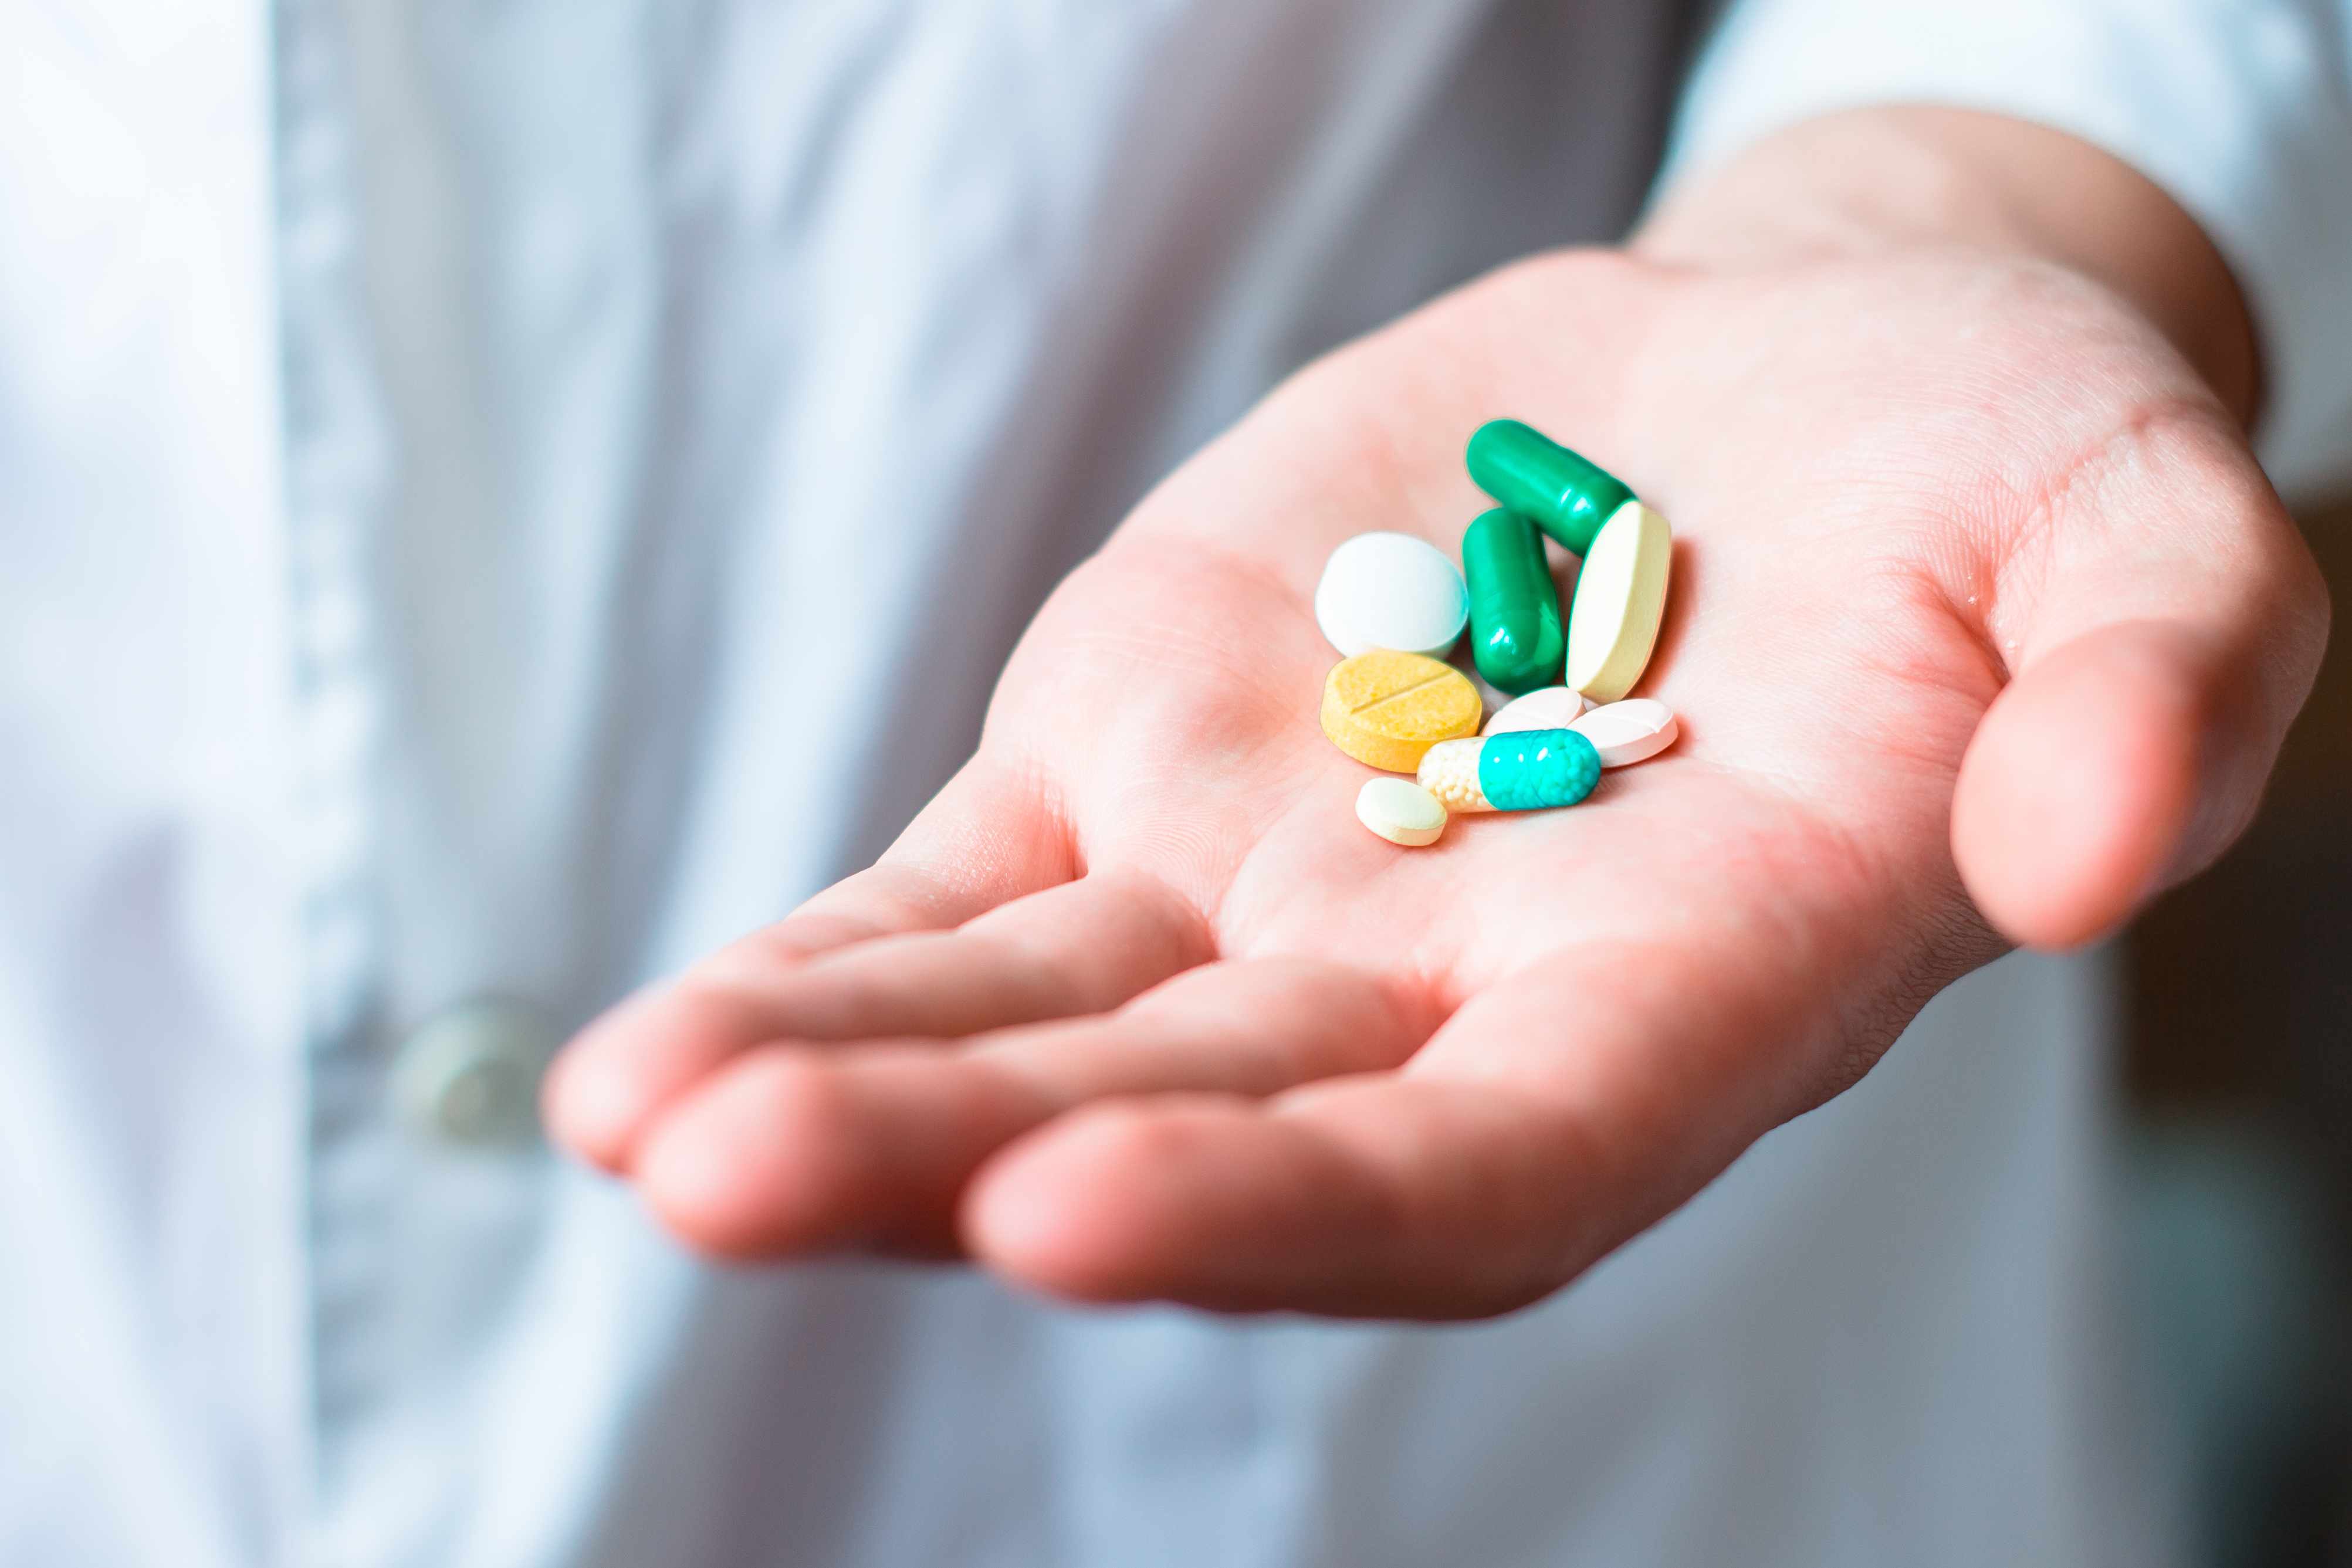 a person's hand full of medicine pills, prescription tablets, vitamins